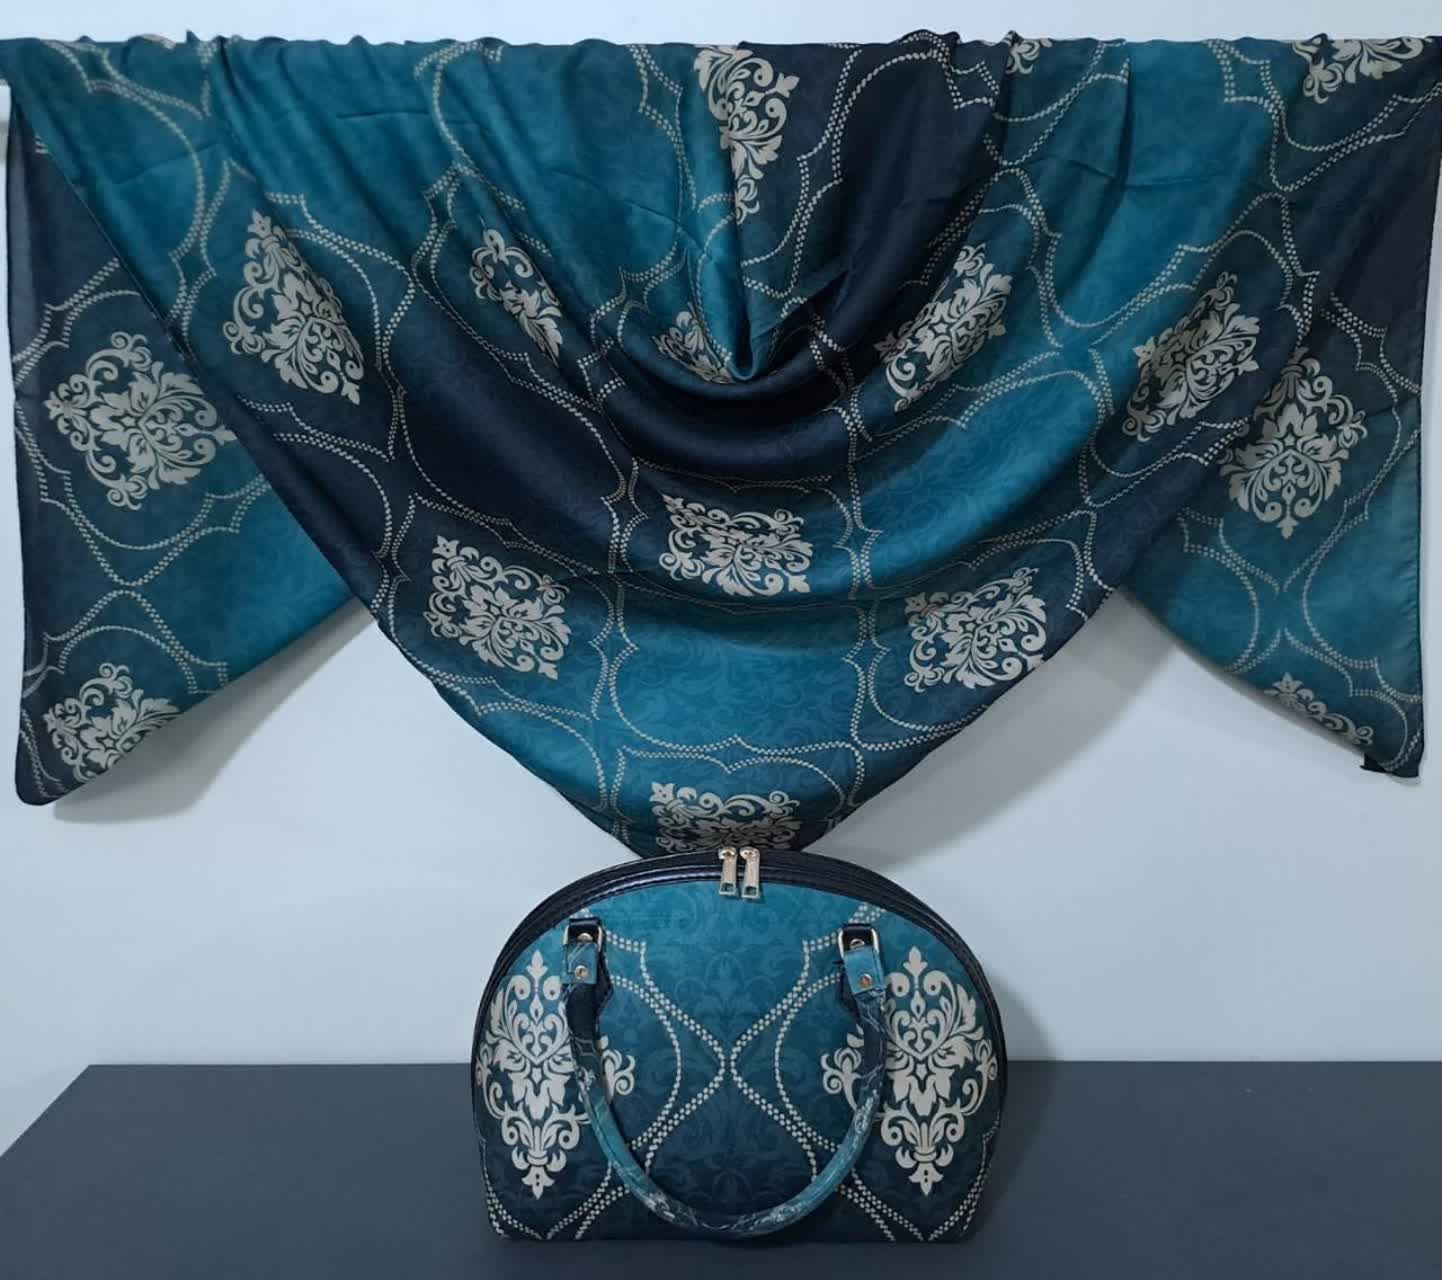 ست کیف و روسری زنانه با کیف نیمگرد رنگ آبی فیروزه ای طرحدار سنتی با ارسال رایگان کد na1491